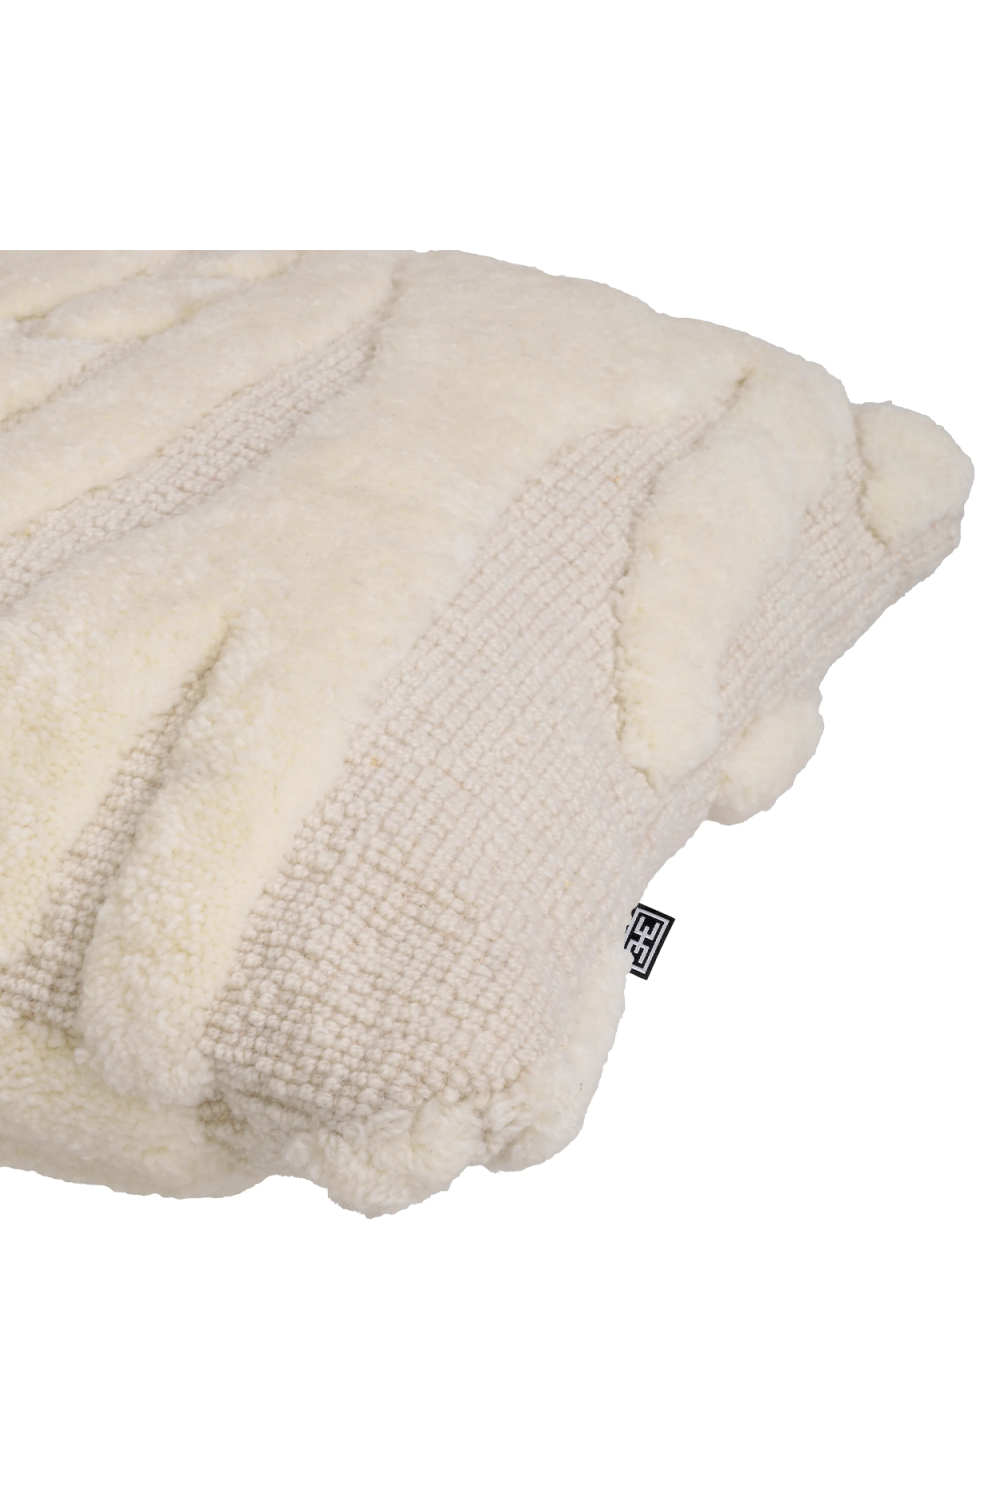 White Woven Wool Cushion | Eichholtz Zenon | Oroa.com